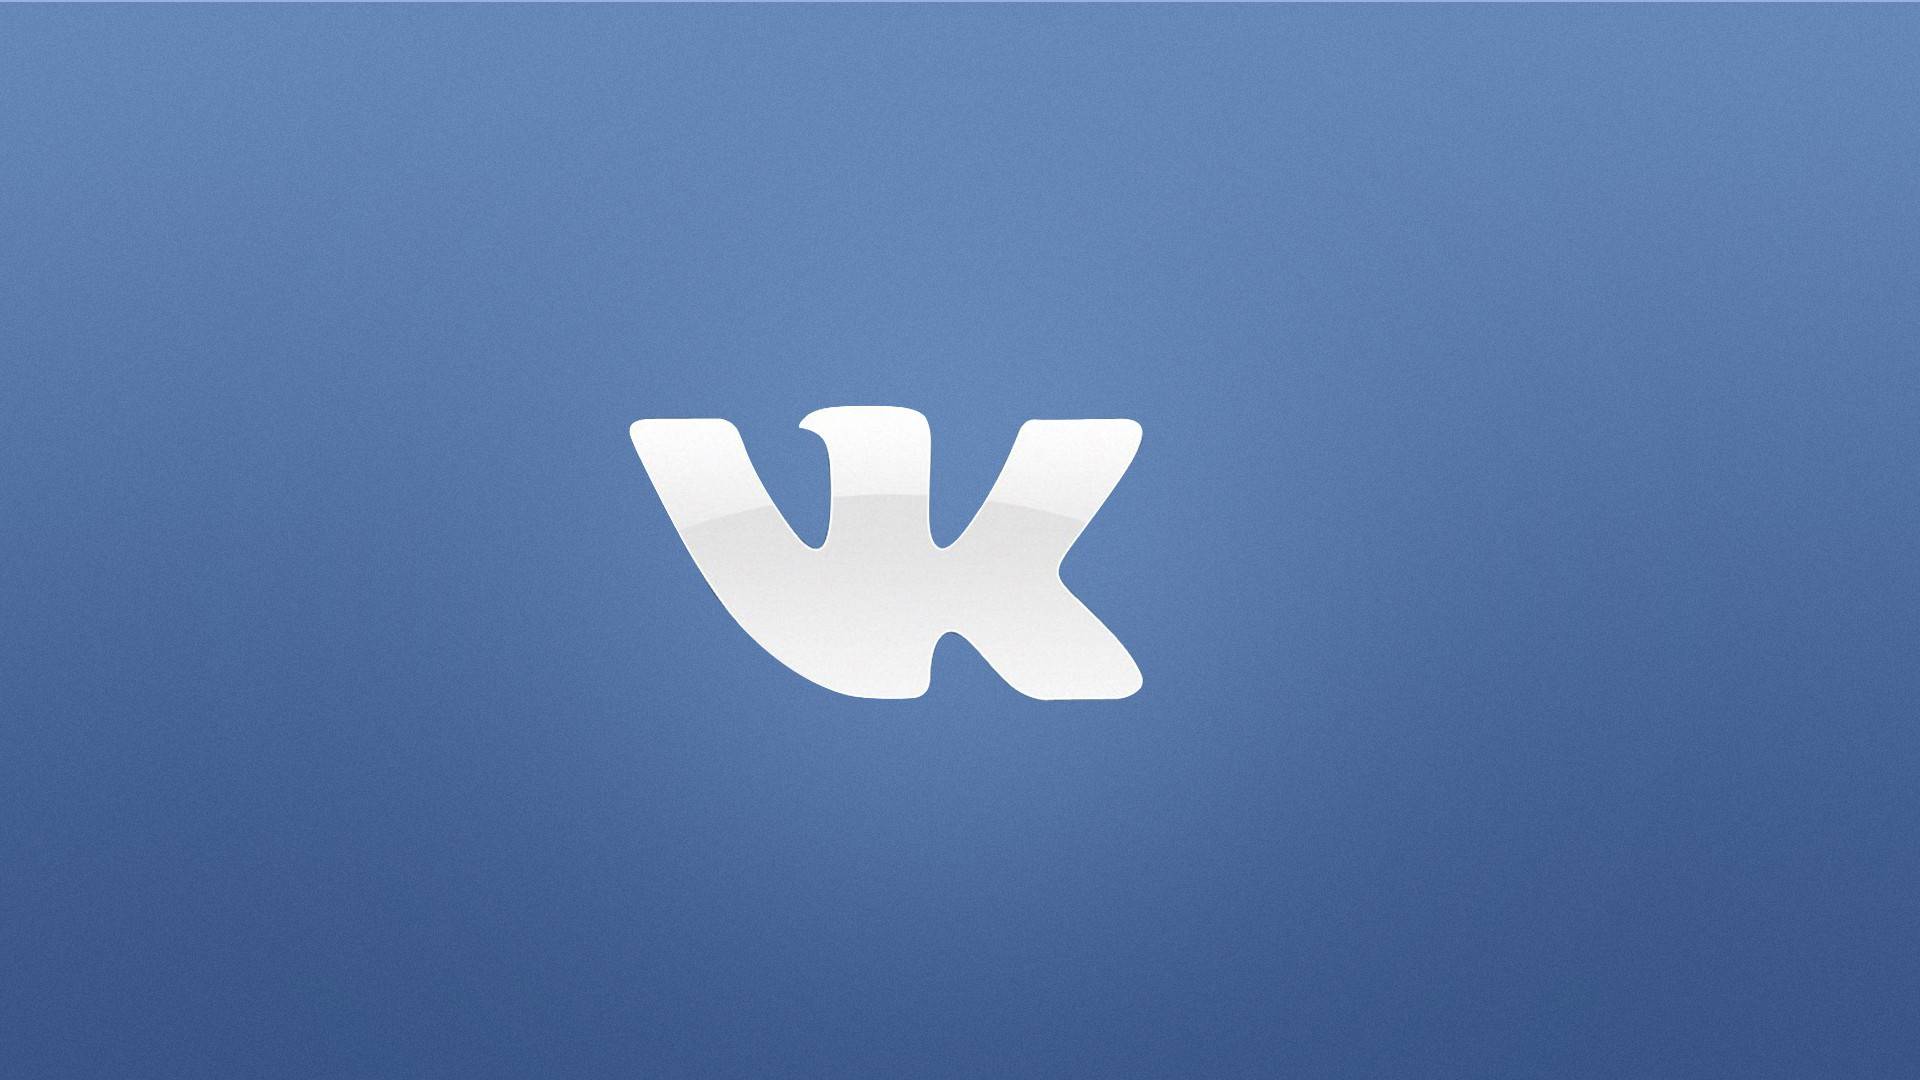 Vk com updates. ВК. Иконка ВК. Ык. Маленький значок ВК.